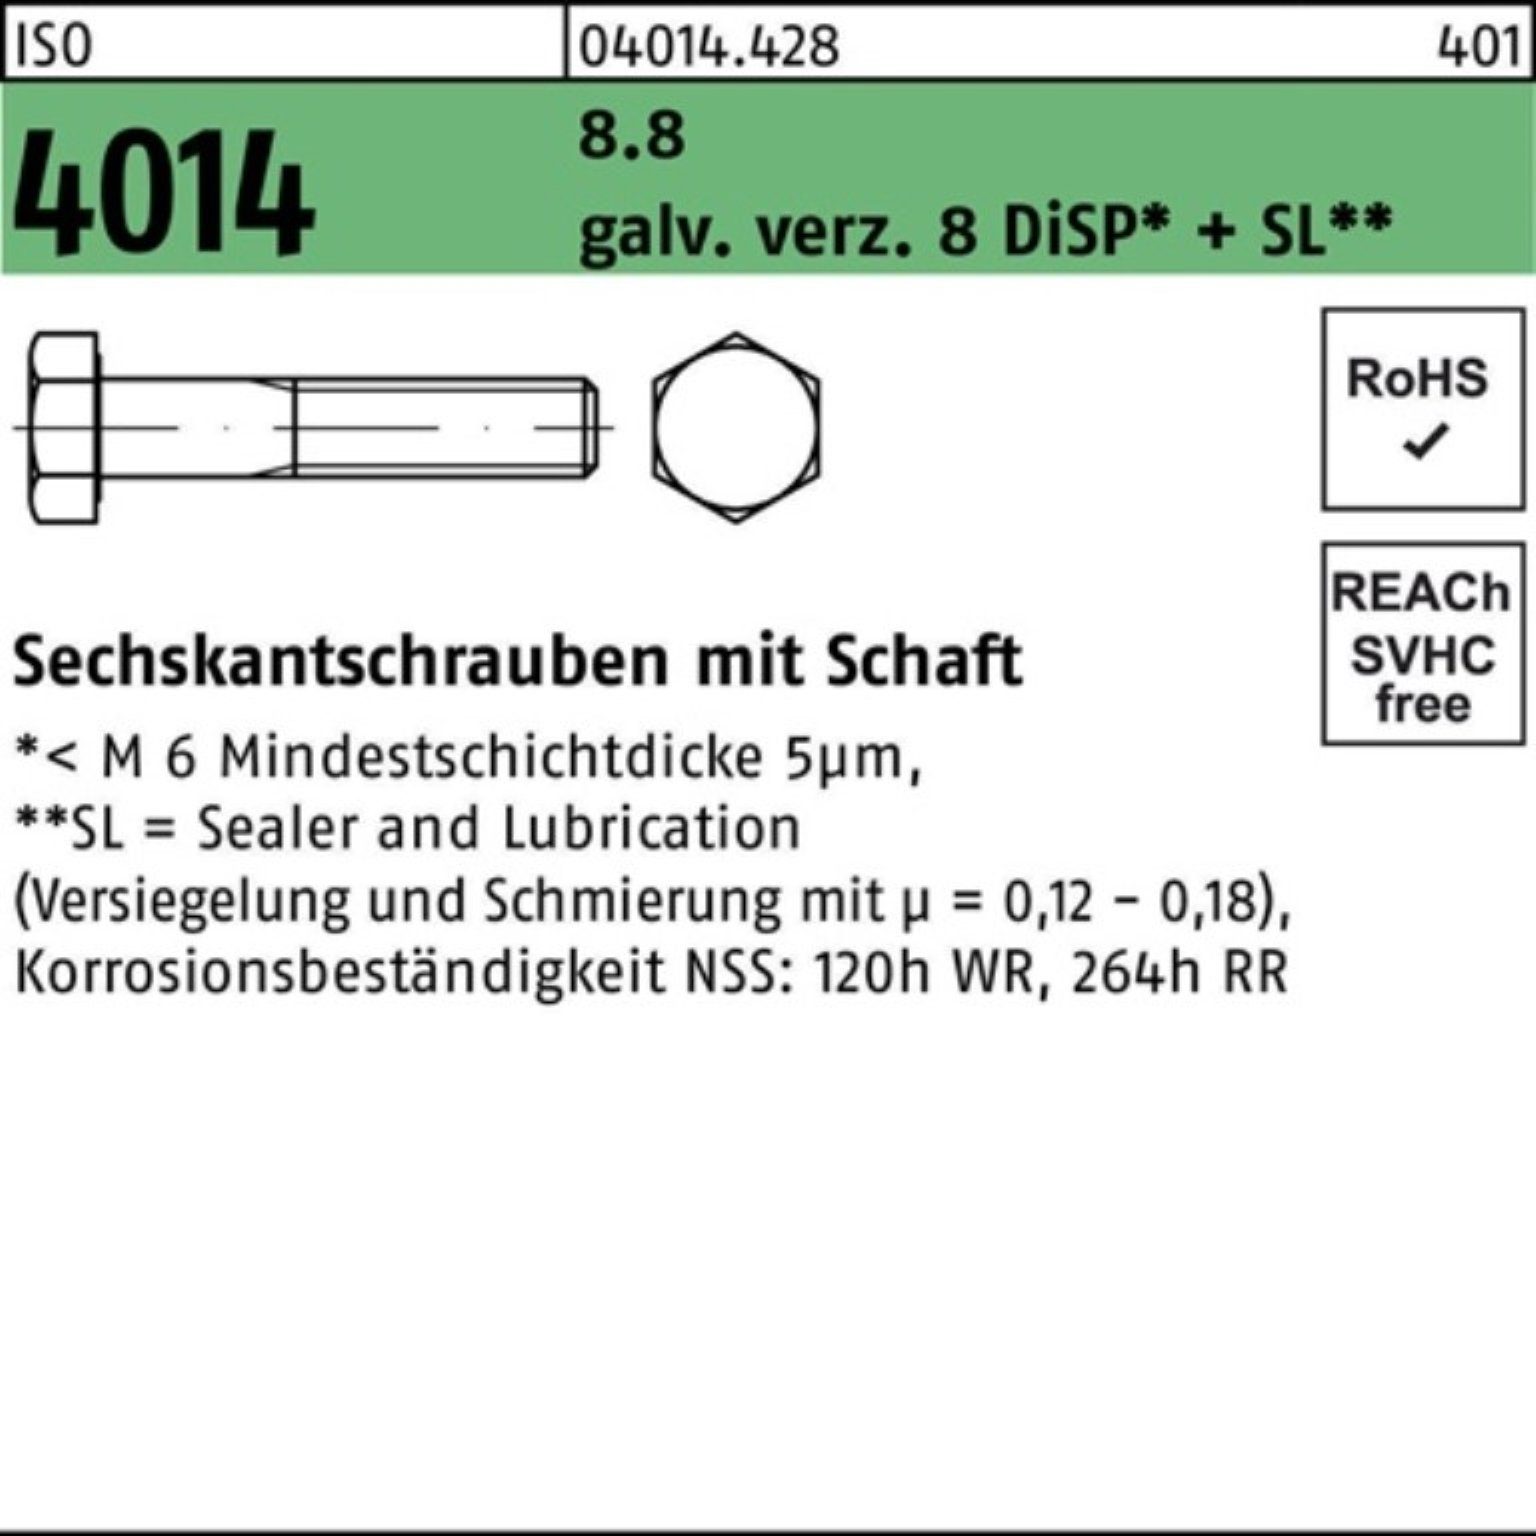 Bufab Sechskantschraube 100er Pack Sechskantschraube ISO 4014 Schaft M27x180 8.8 galv.verz. 8